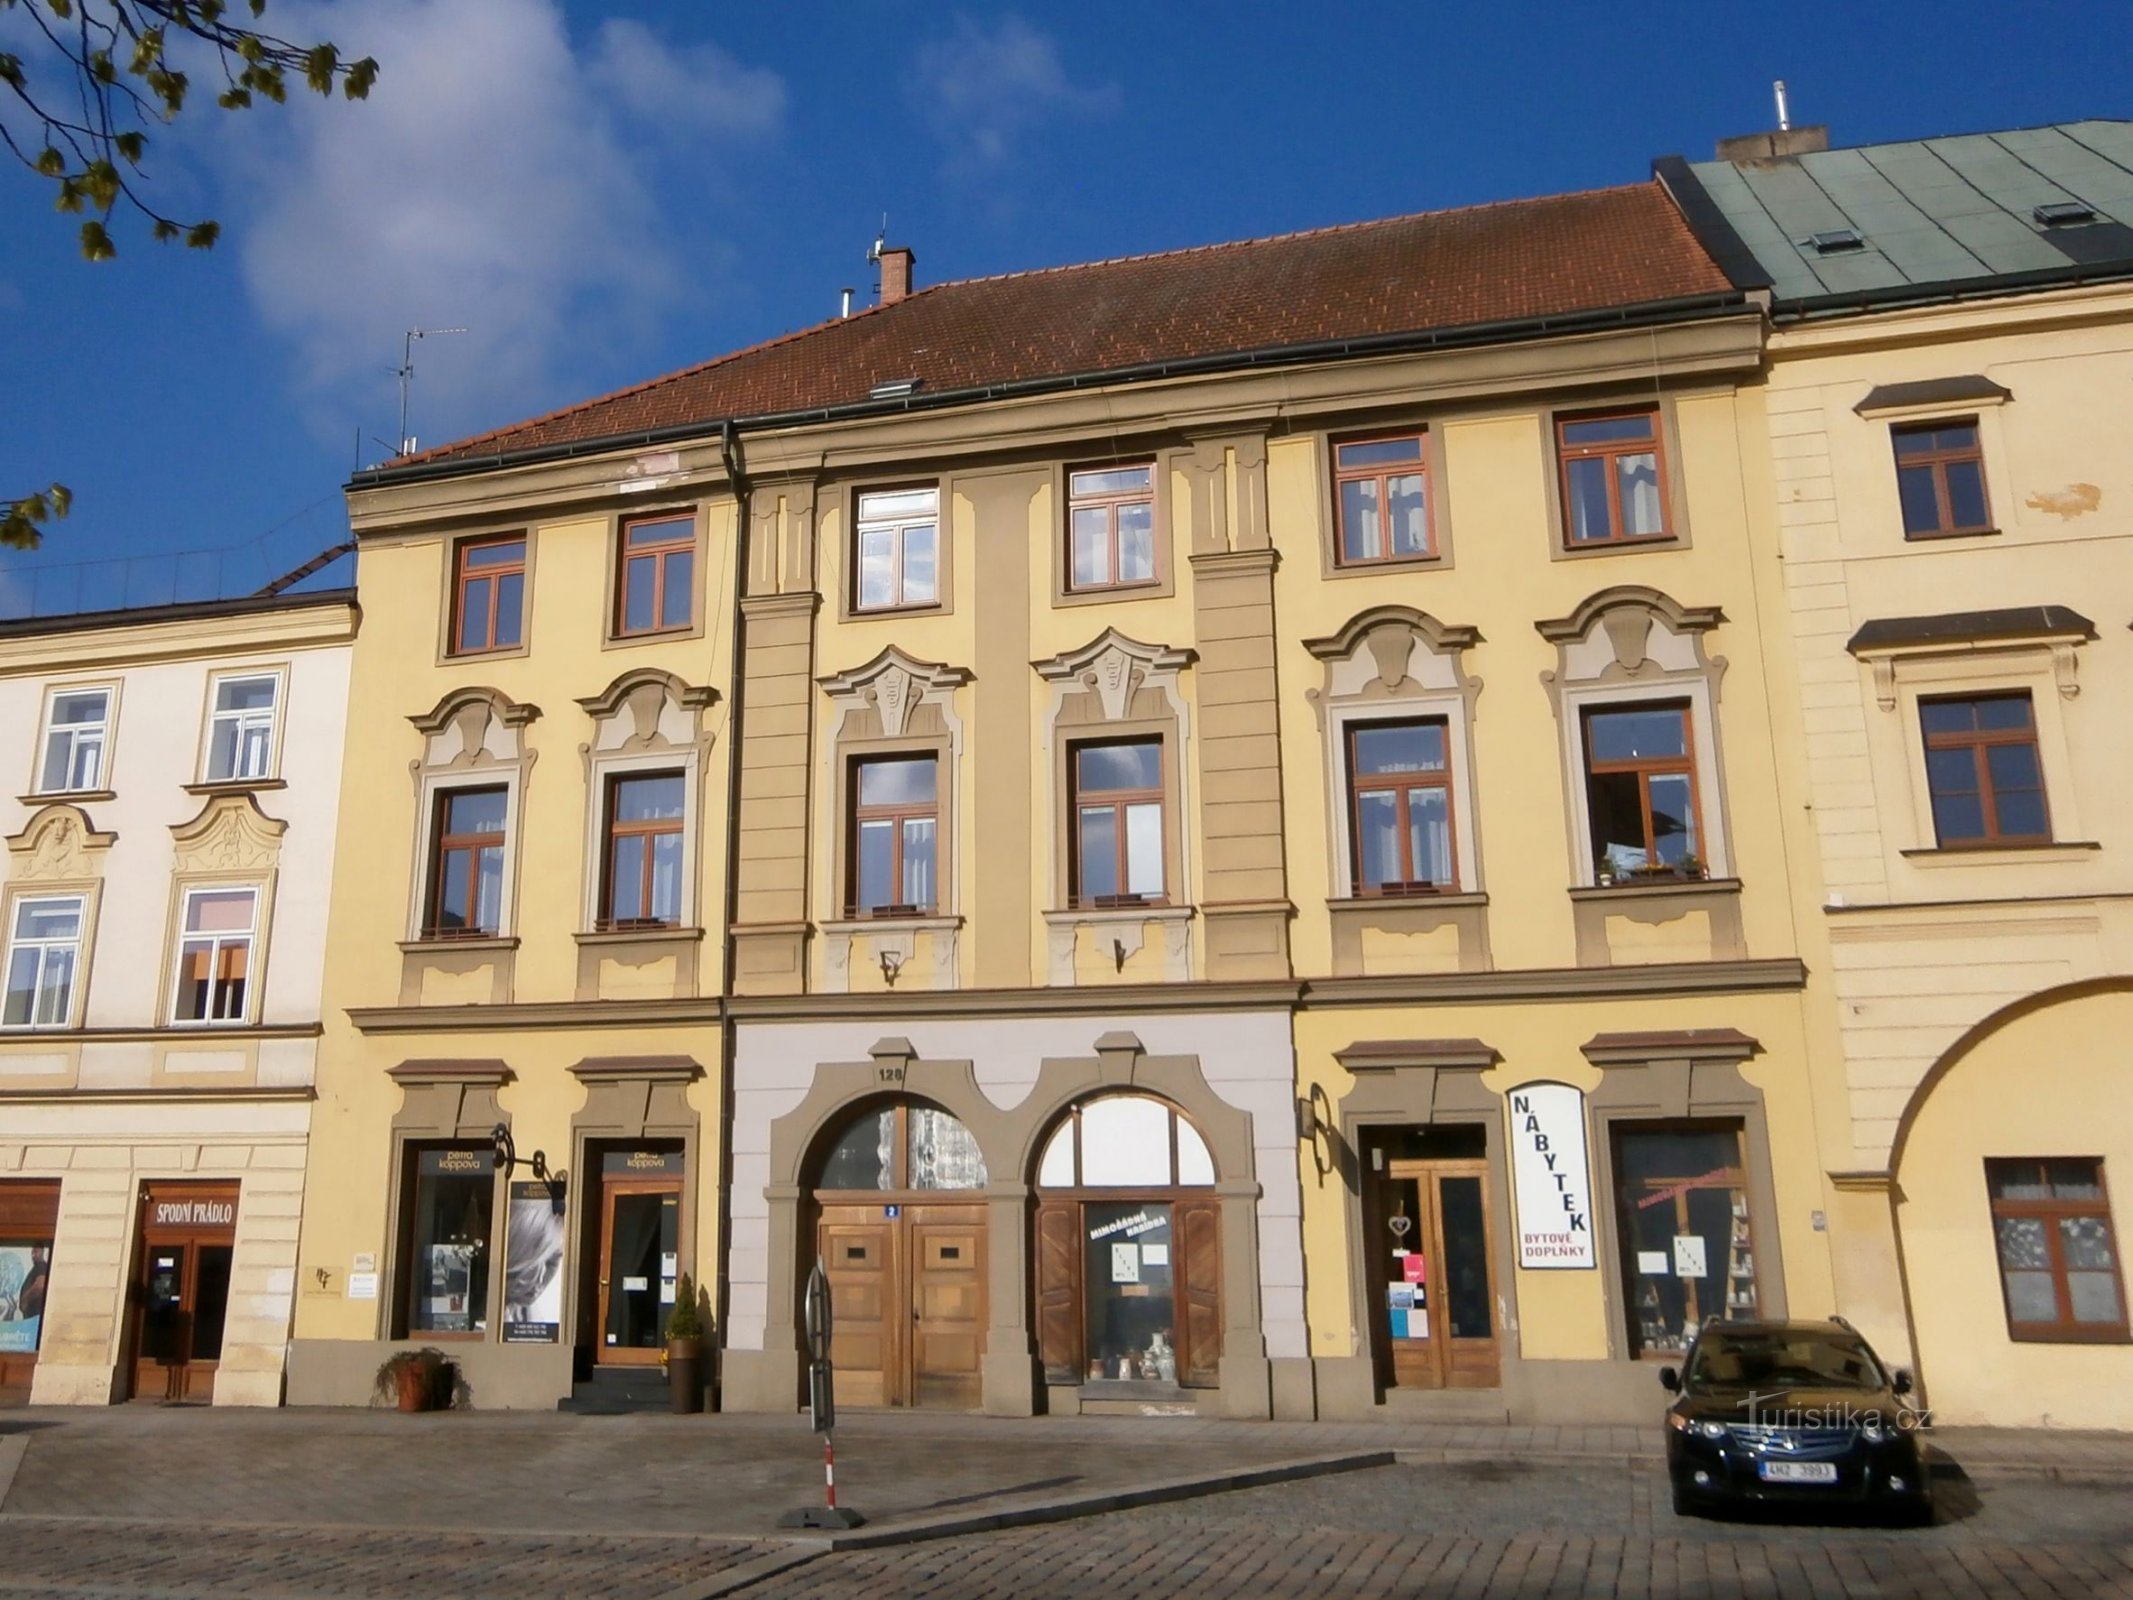 Malé náměstí br. 128 (Hradec Králové, 14.4.2017. travnja XNUMX.)